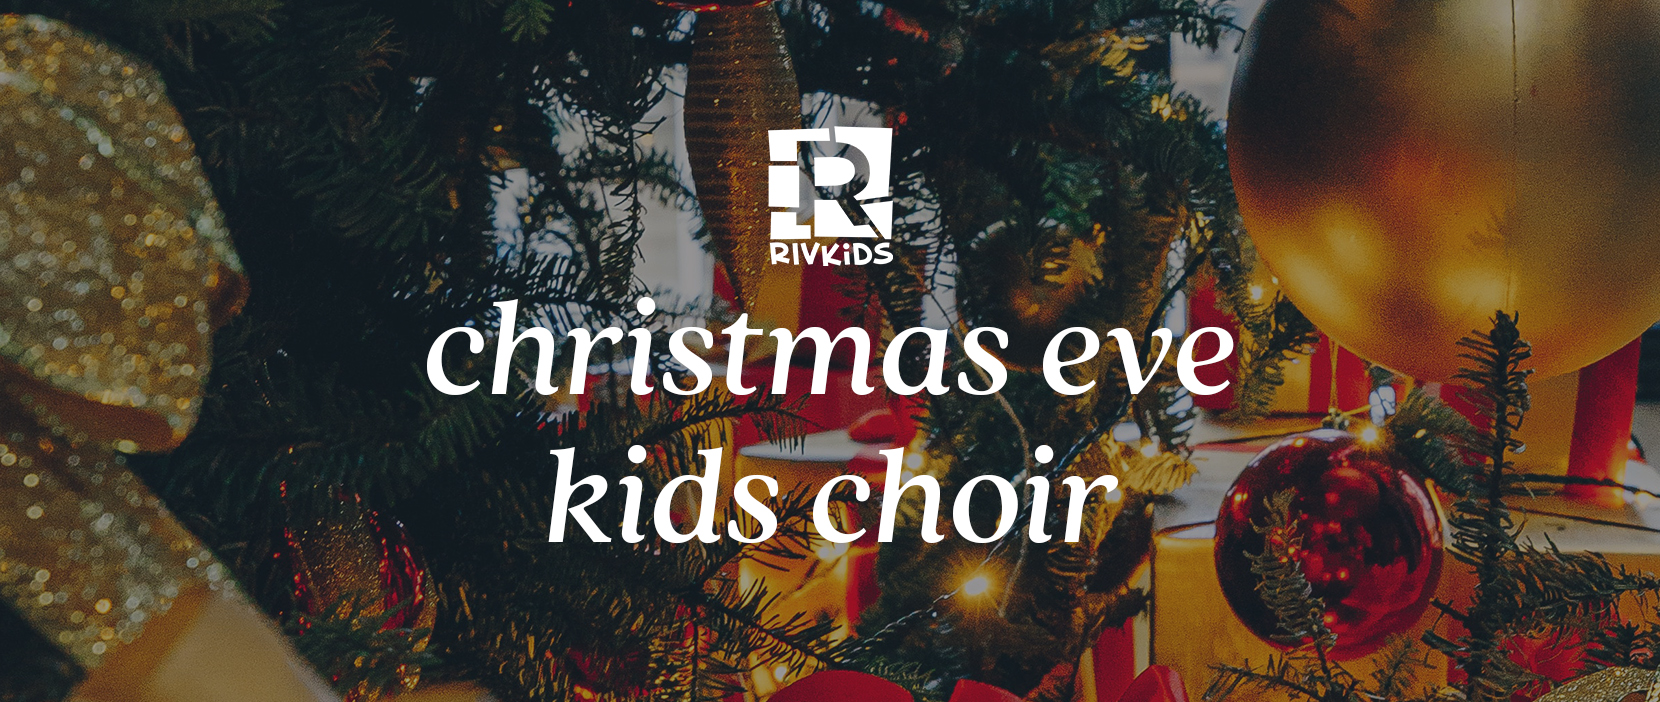 Image for Christmas Eve Kids Choir